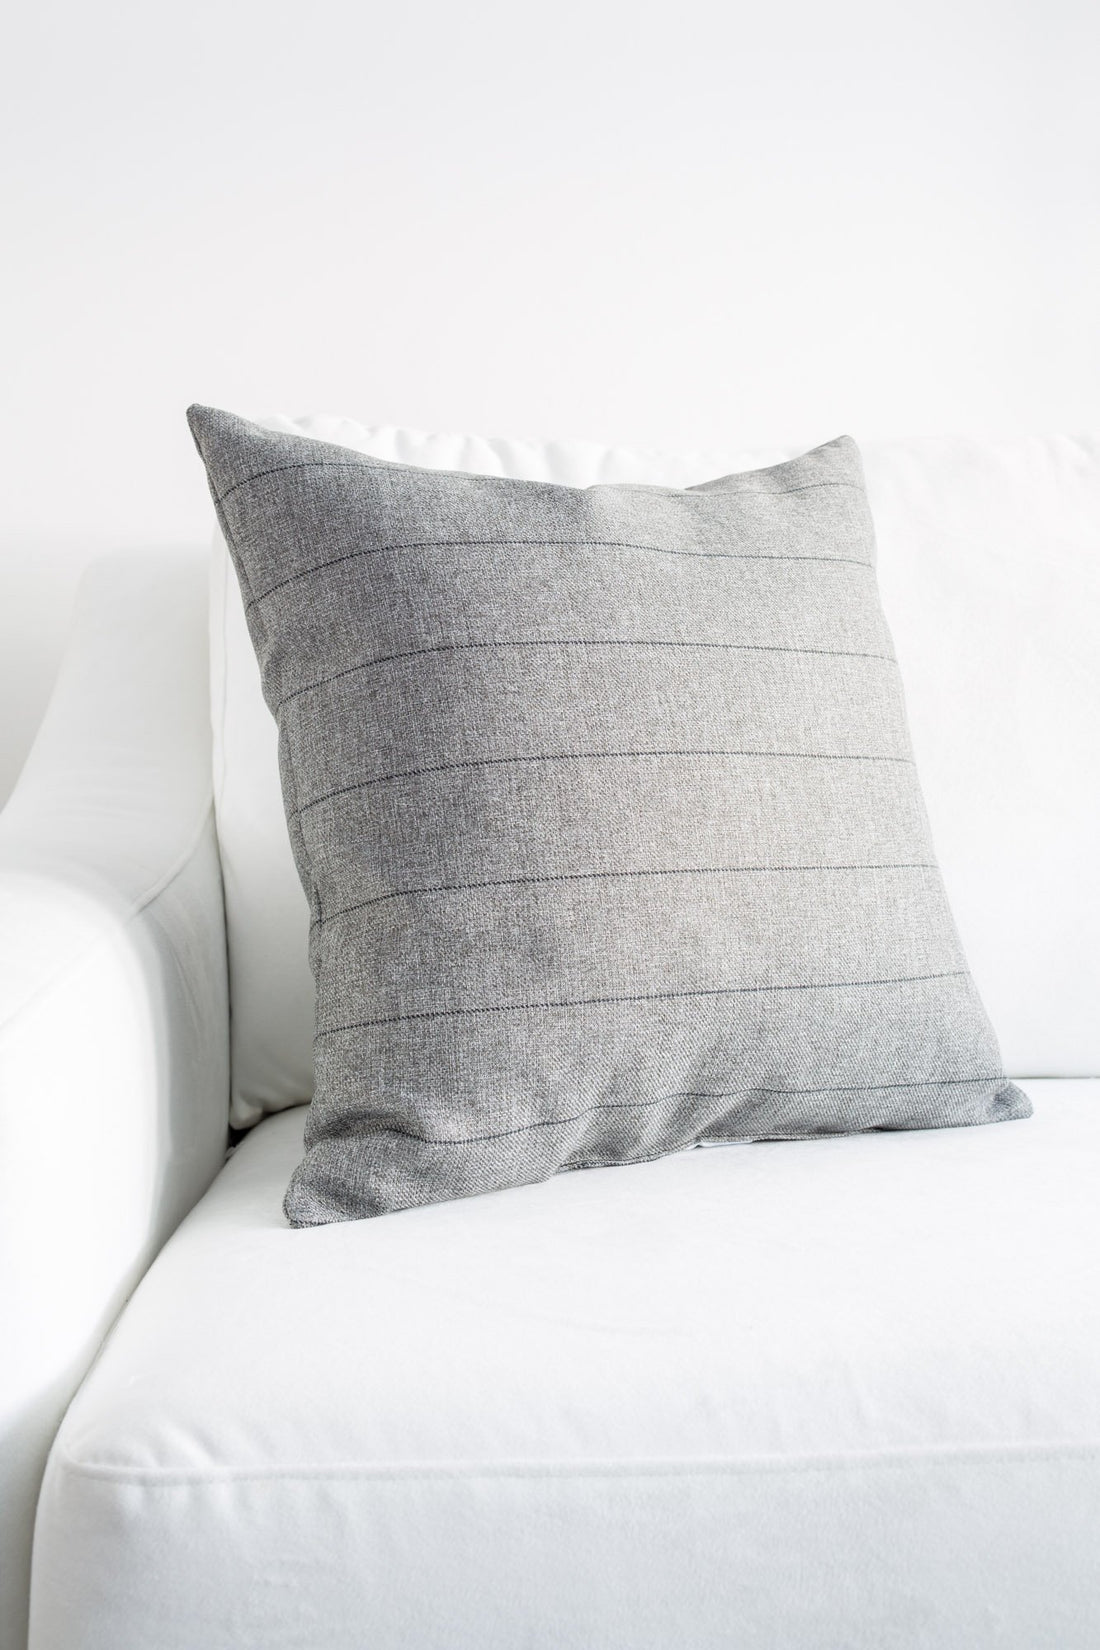 Alcorn Home | Armani Pillow – AlcornHome